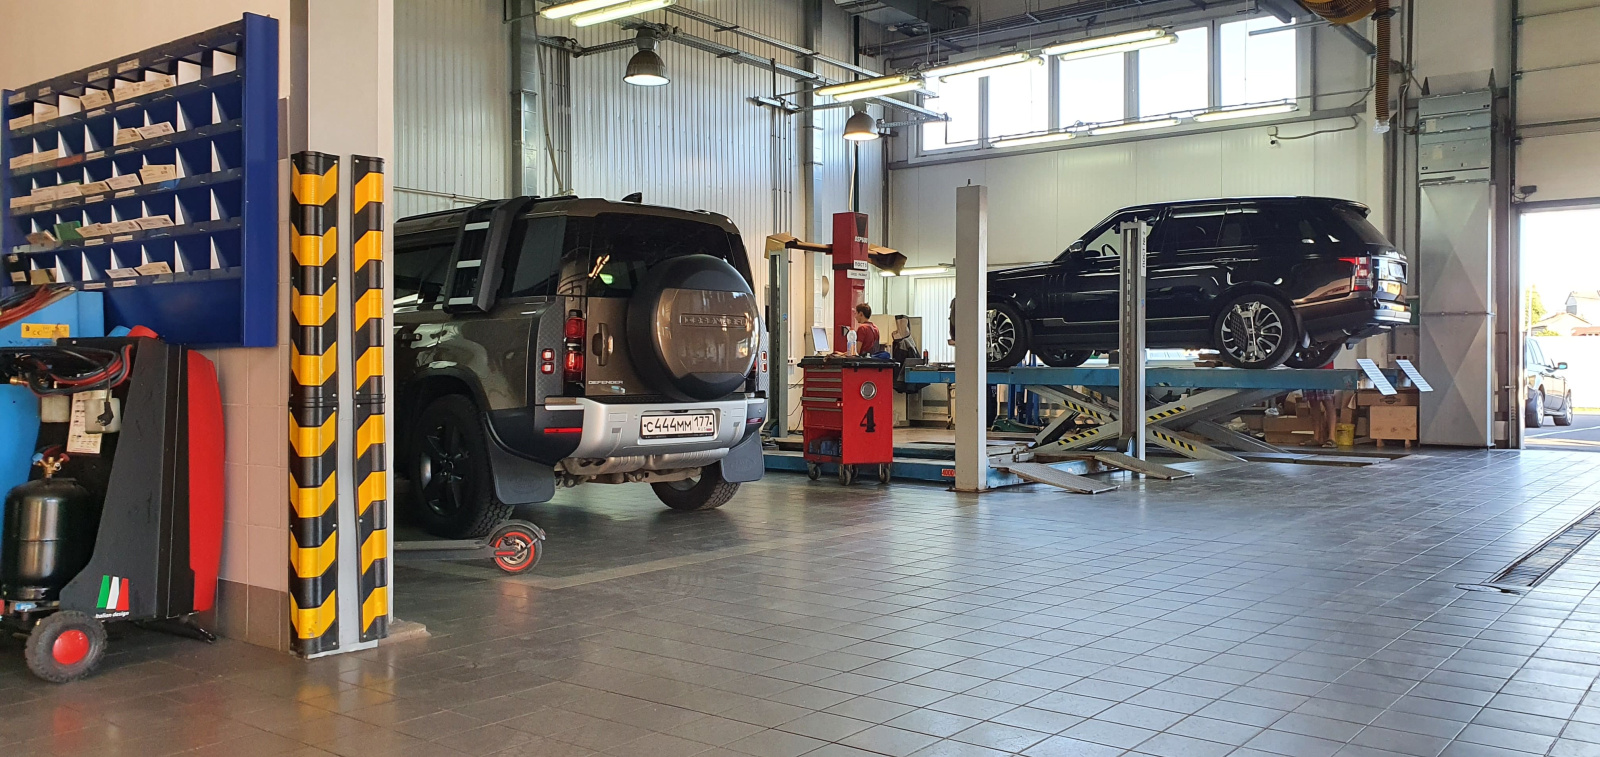 Оснащение сервисной станции обслуживания автомобилей демпферами ДКУ-20 для безопасного движения, Автосалон Jaguar, Land Rover г. Ярославль